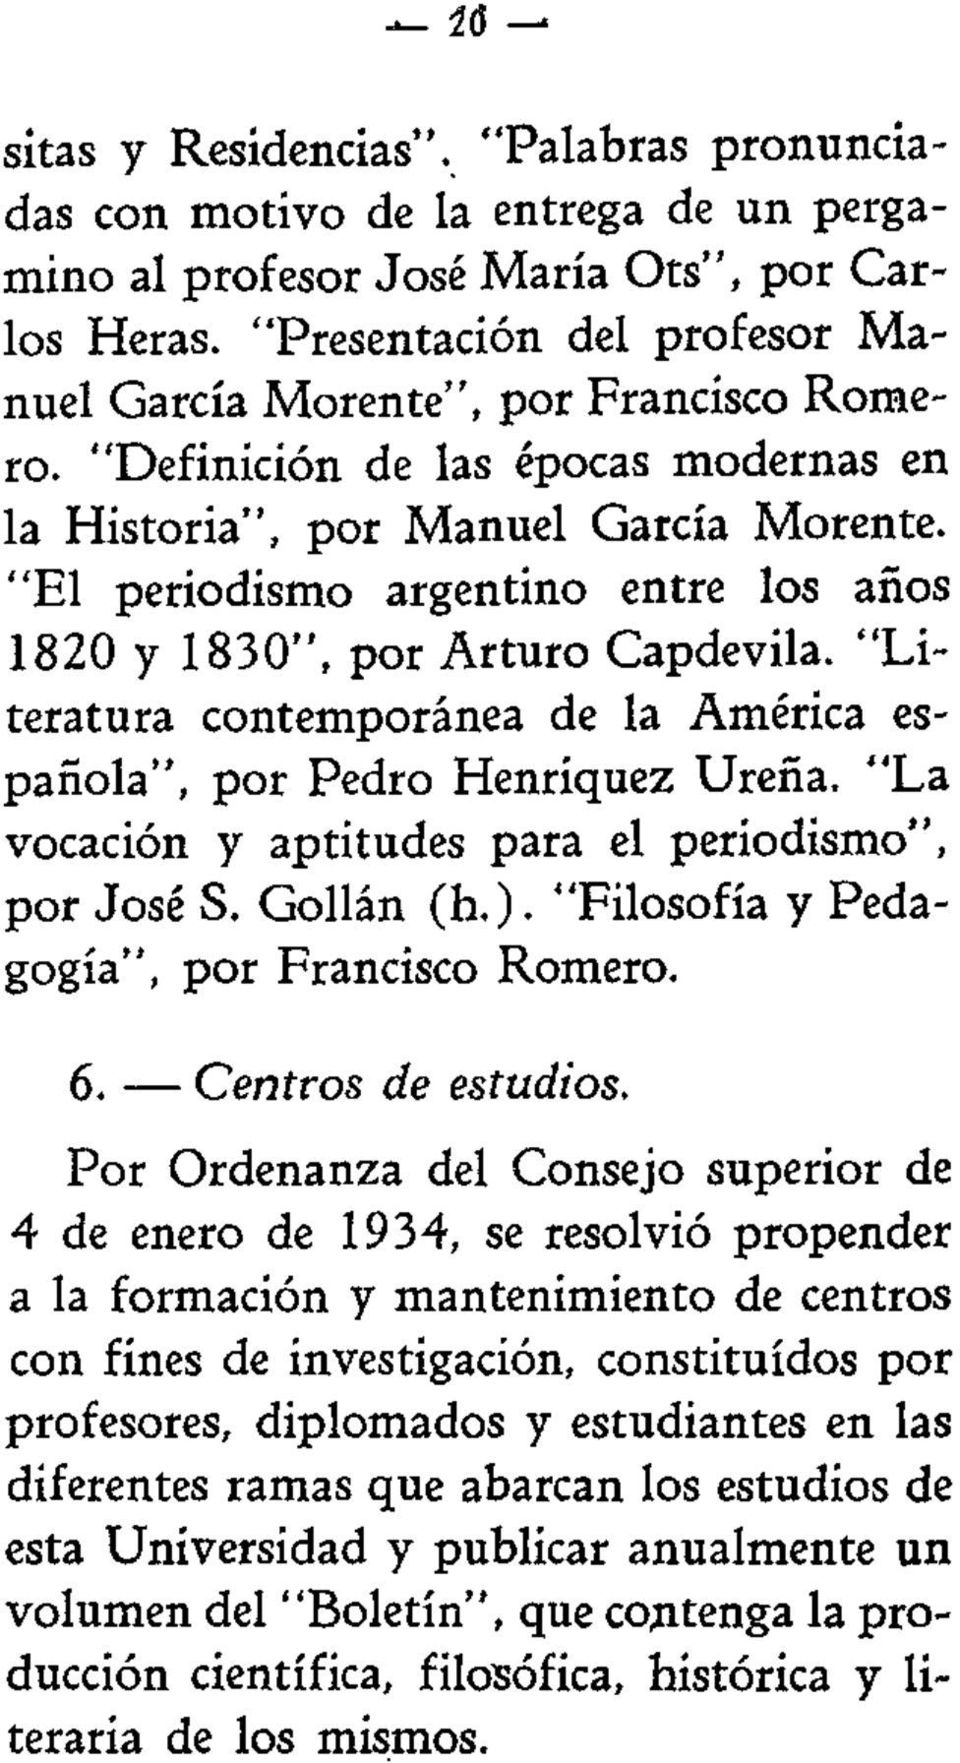 "El periodismo argentino entre los años 1820 y 1830", por Arturo Capdevila. "Literatura contemporánea de la América española", por Pedro Henriquez Ureña.